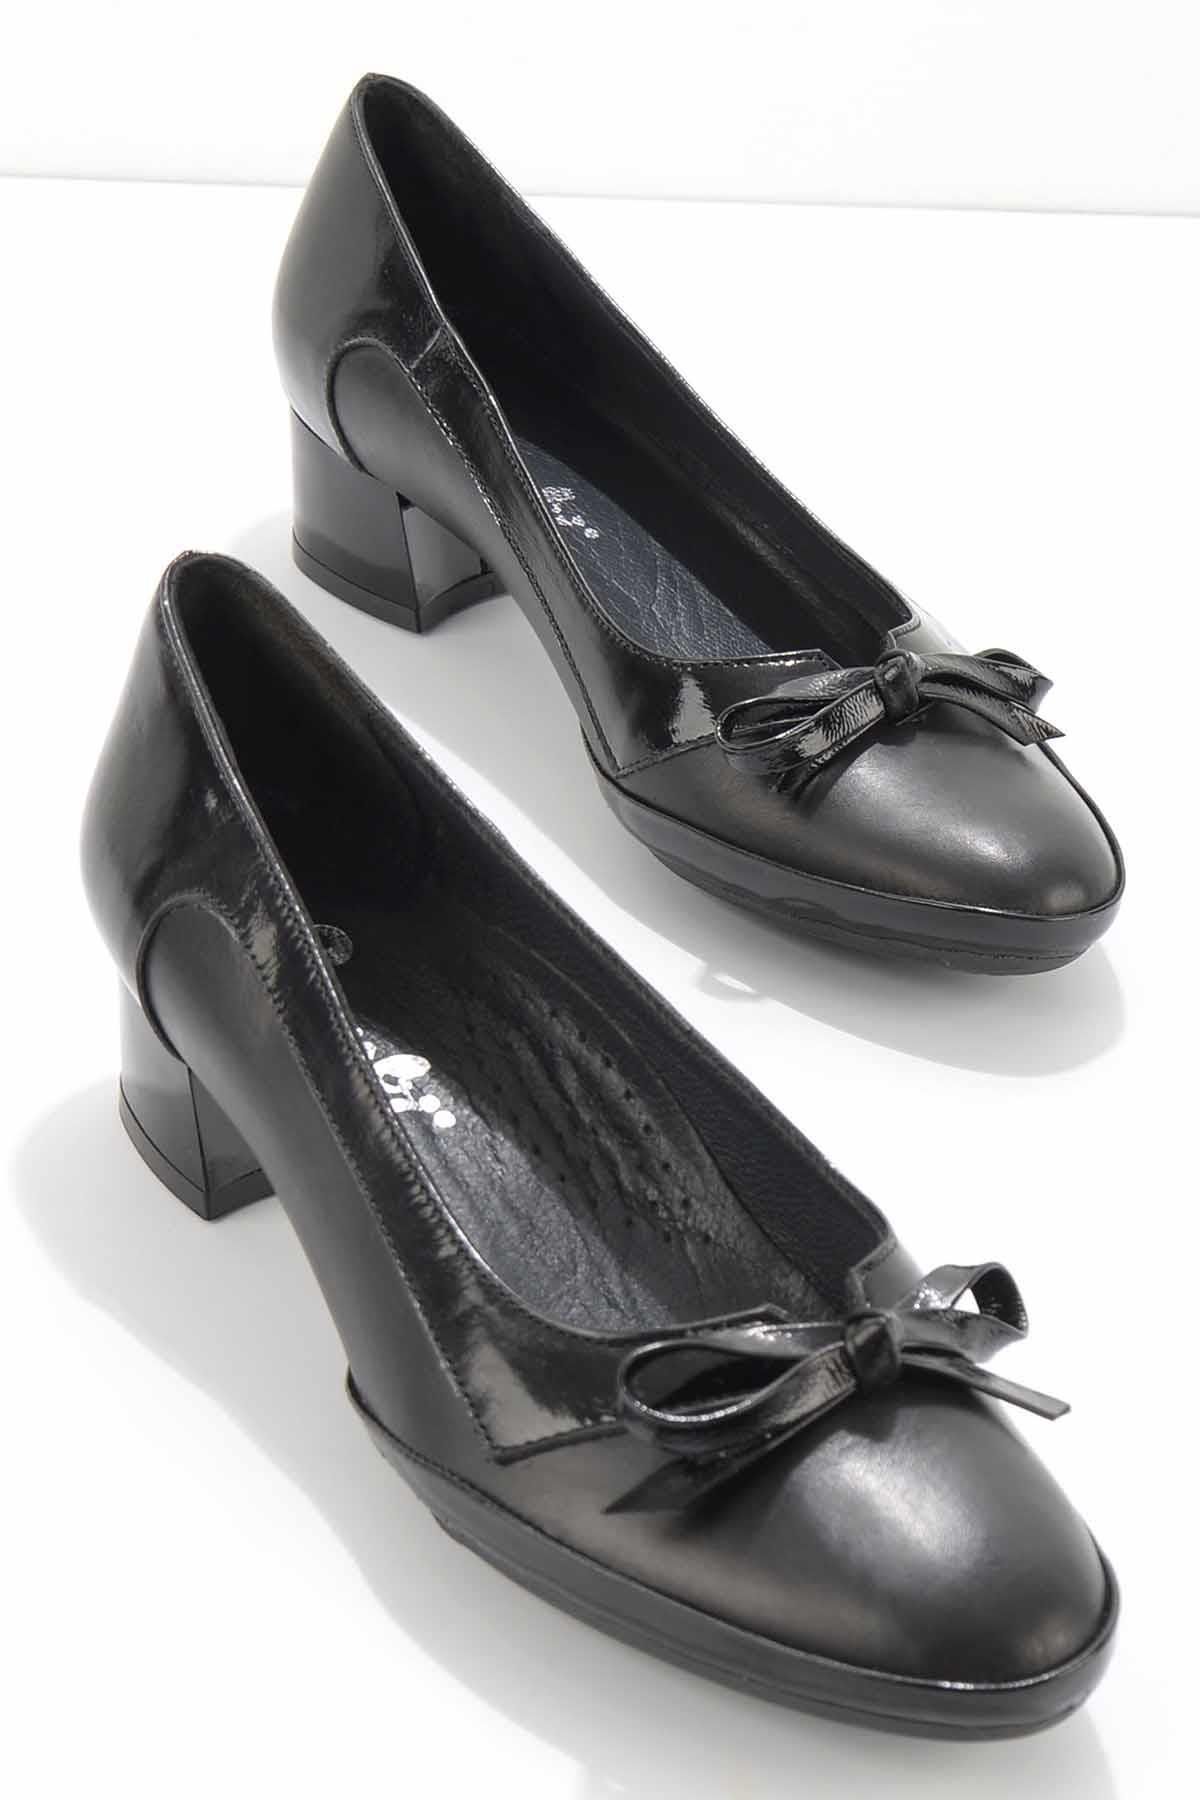 Bambi Siyah Hakiki Deri Kadın Klasik Topuklu Ayakkabı K01531172603